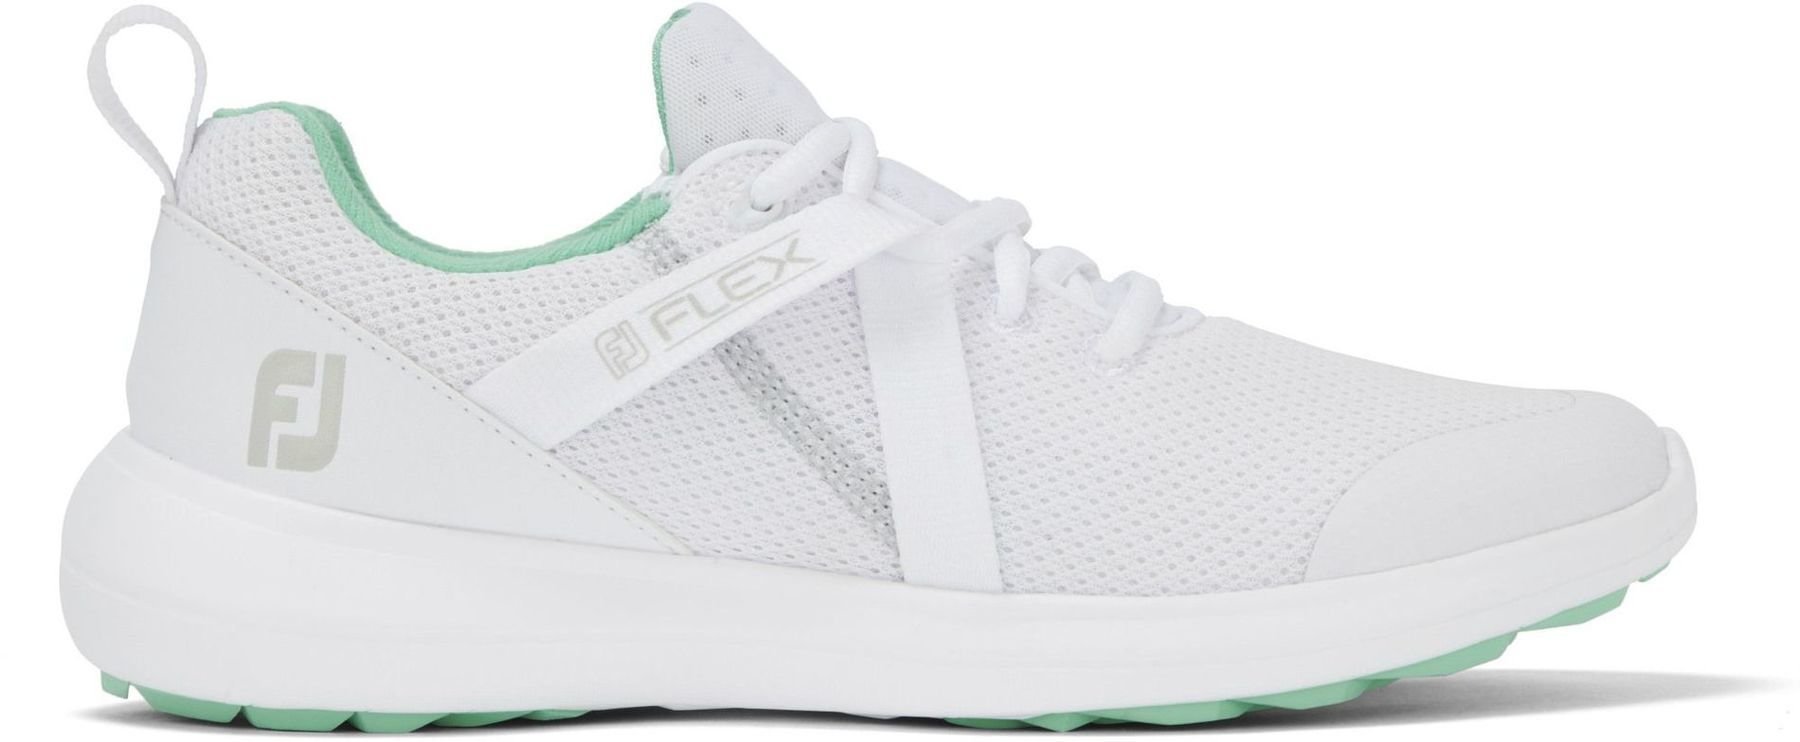 Damskie buty golfowe Footjoy Flex White/Green 36,5 (Tylko rozpakowane)